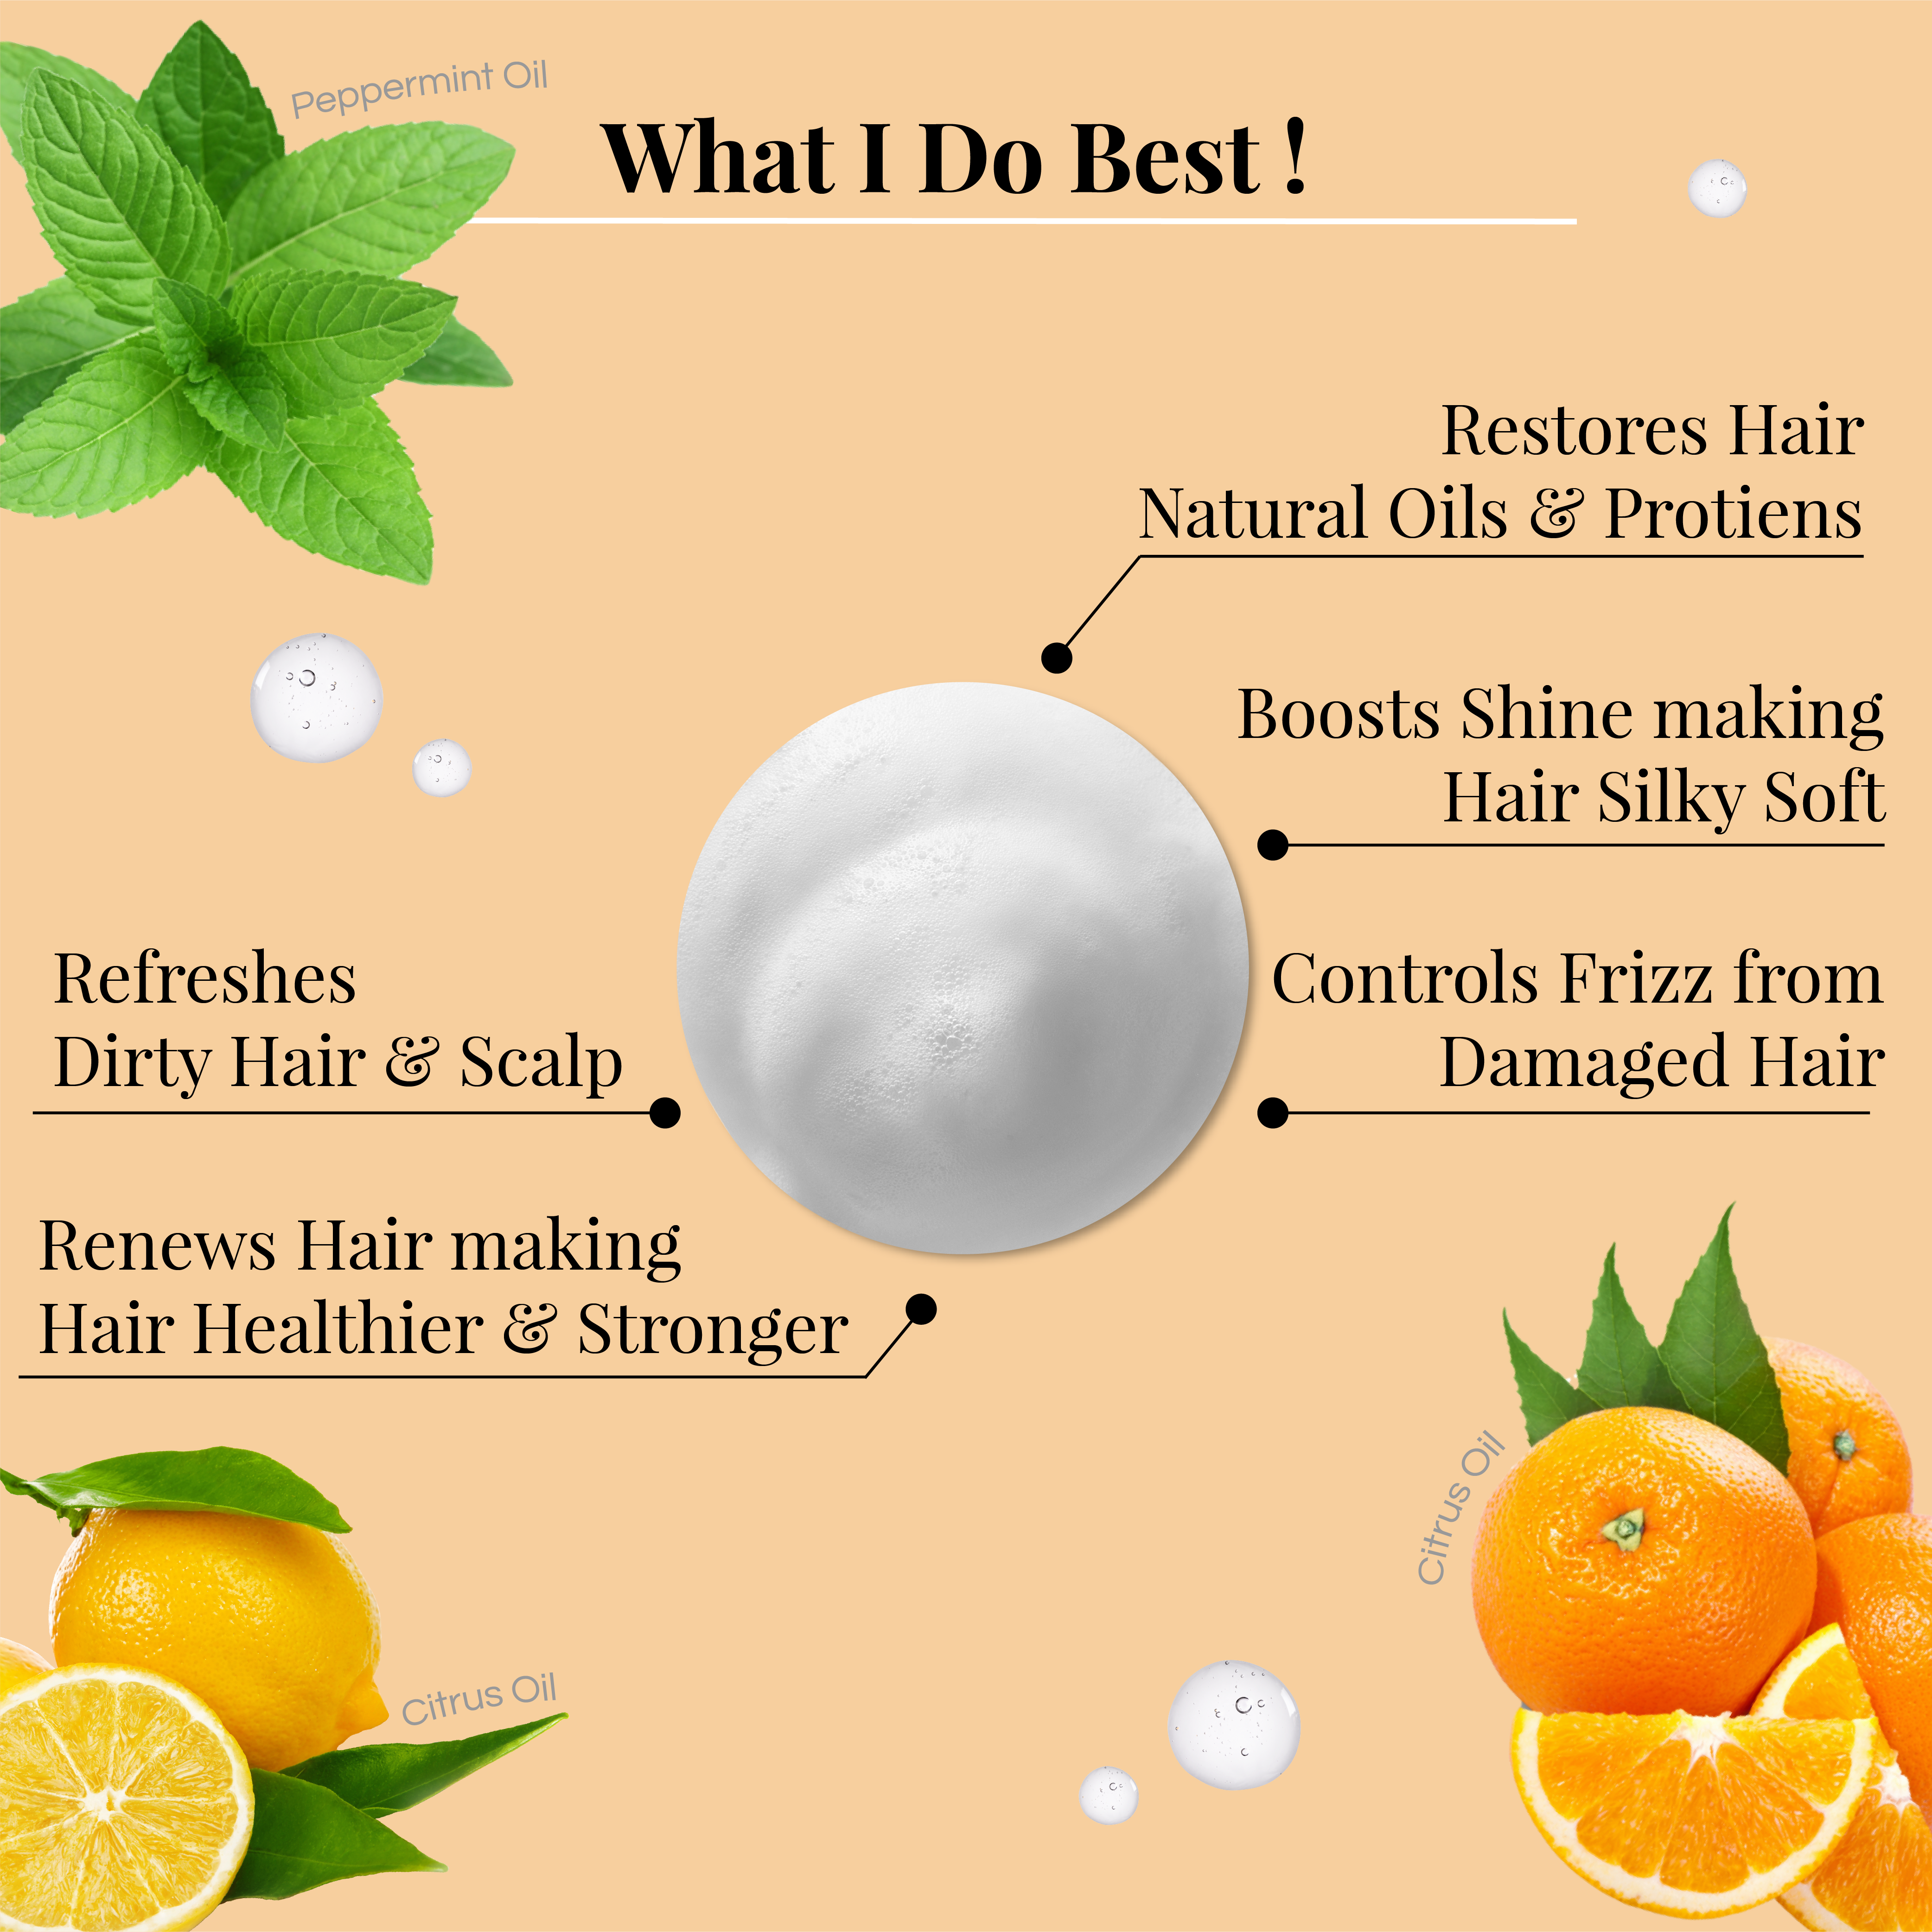 Peppermint & Citrus Oil Keratin Hair Renewal Shampoo - LAFAYRE